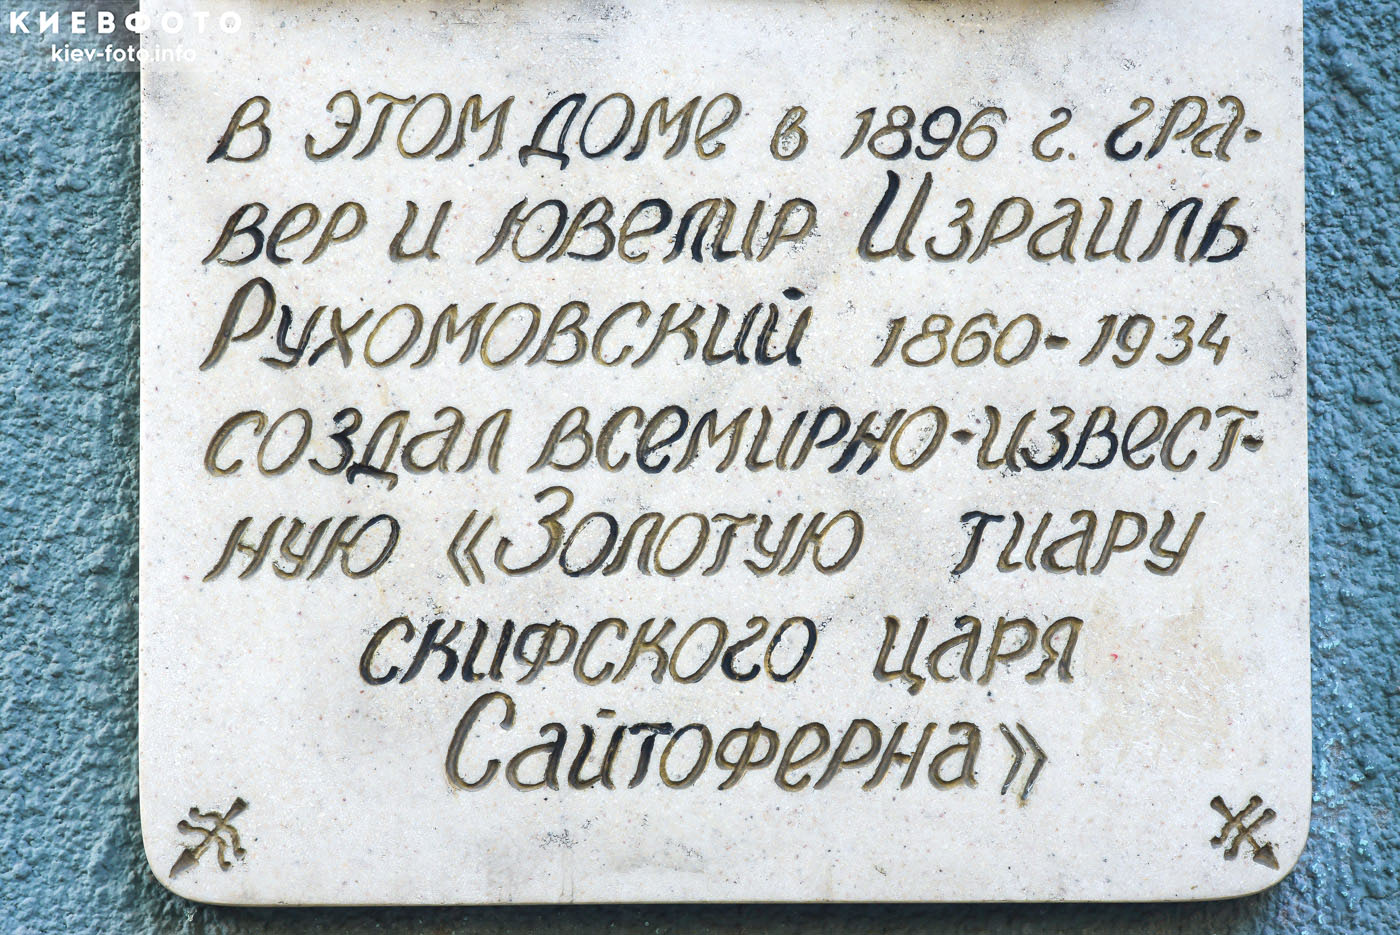 Мемориальная доска ювелиру Израилю Рухомовскому в Одессе